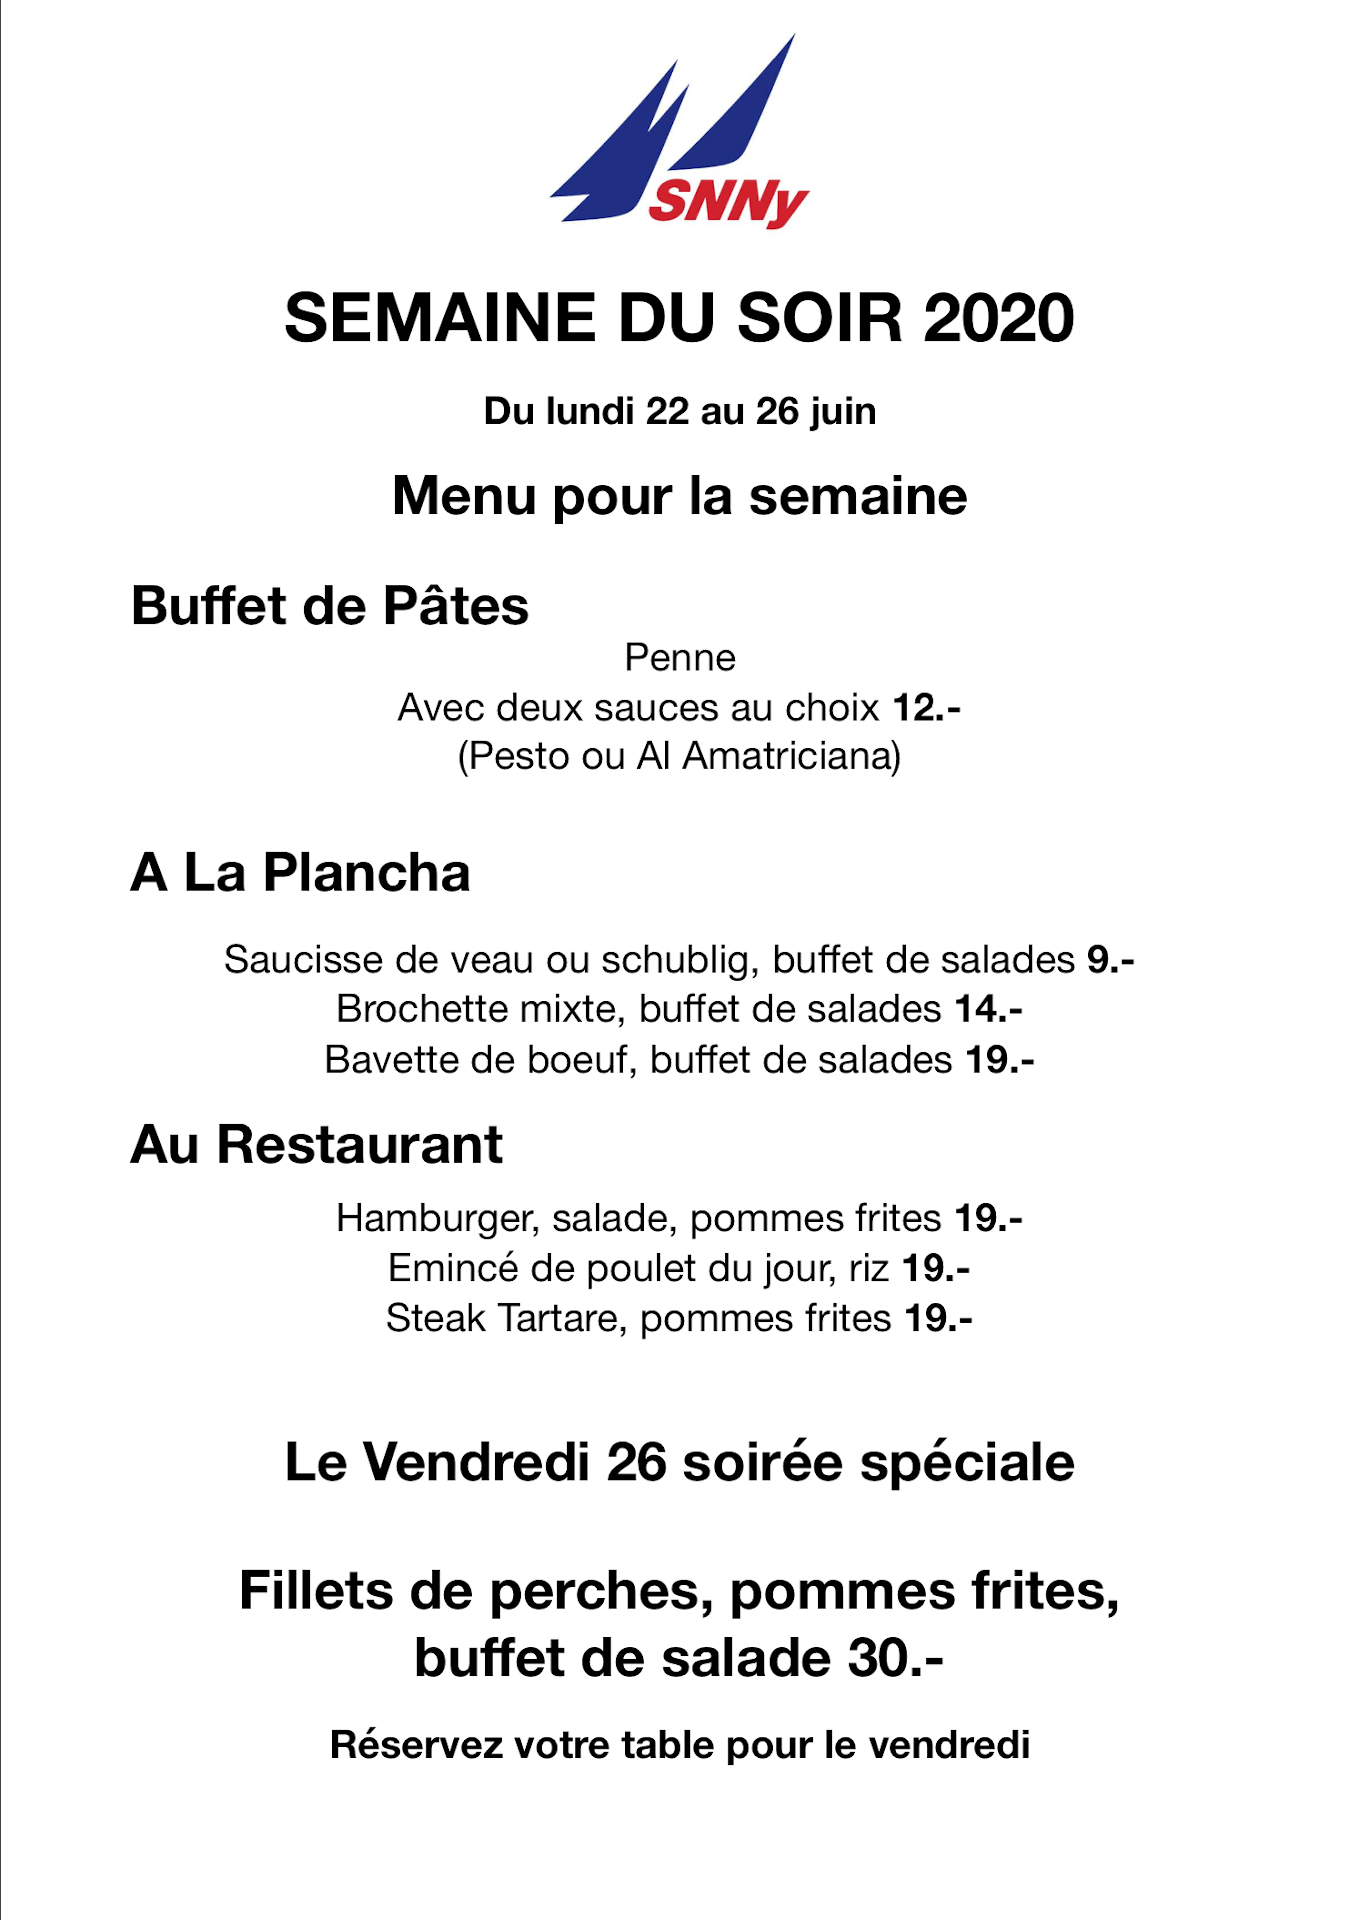 2020 SDS menu